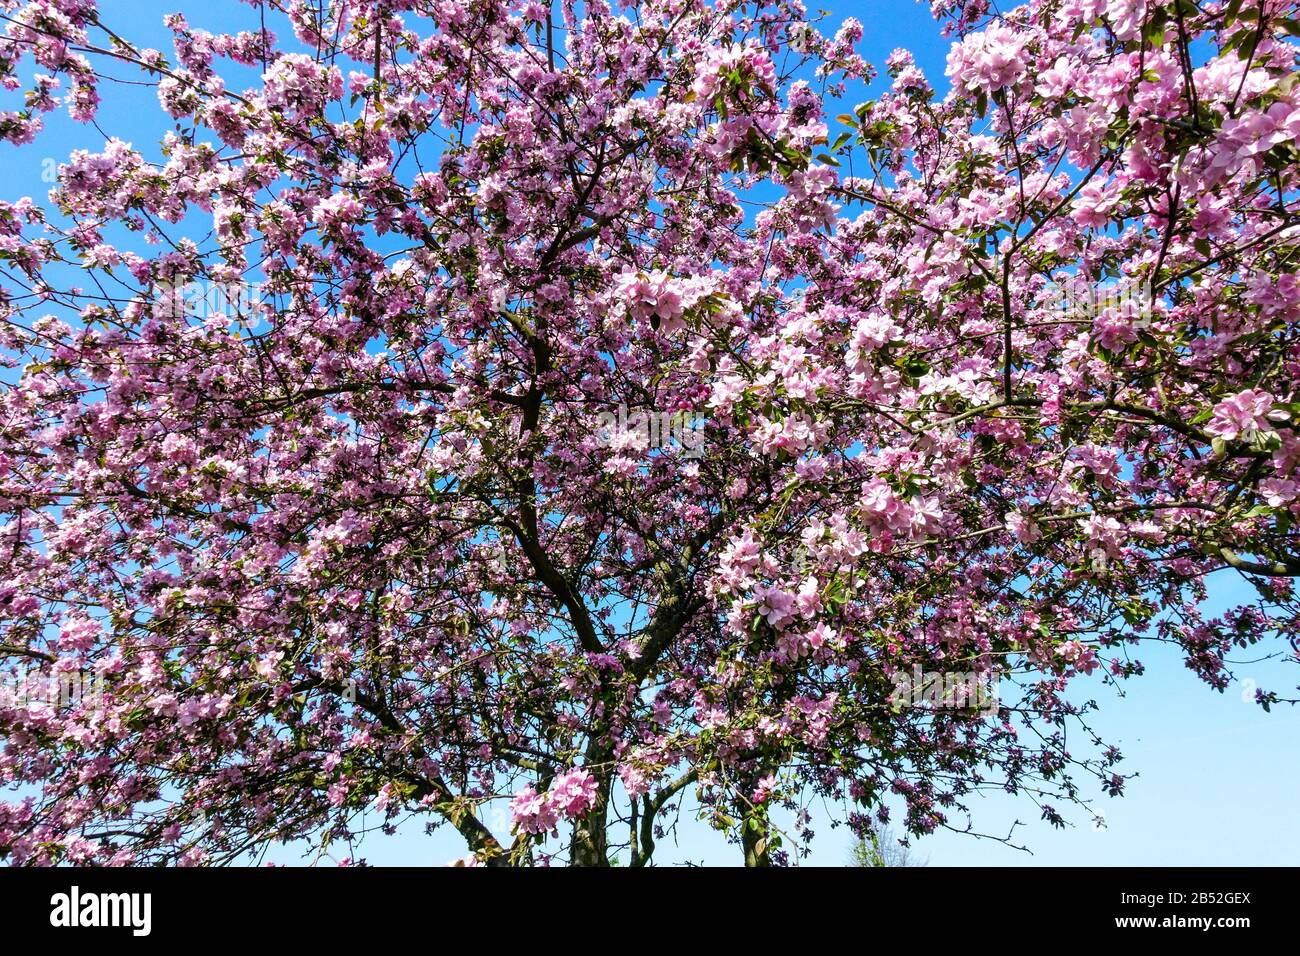 Frühlingsbäume in Blüte an sonnigen Tagen, schönes Wetter Rosa Apfelbäume Blühende Blumen auf Ästen gegen den blauen Himmel Stockfoto